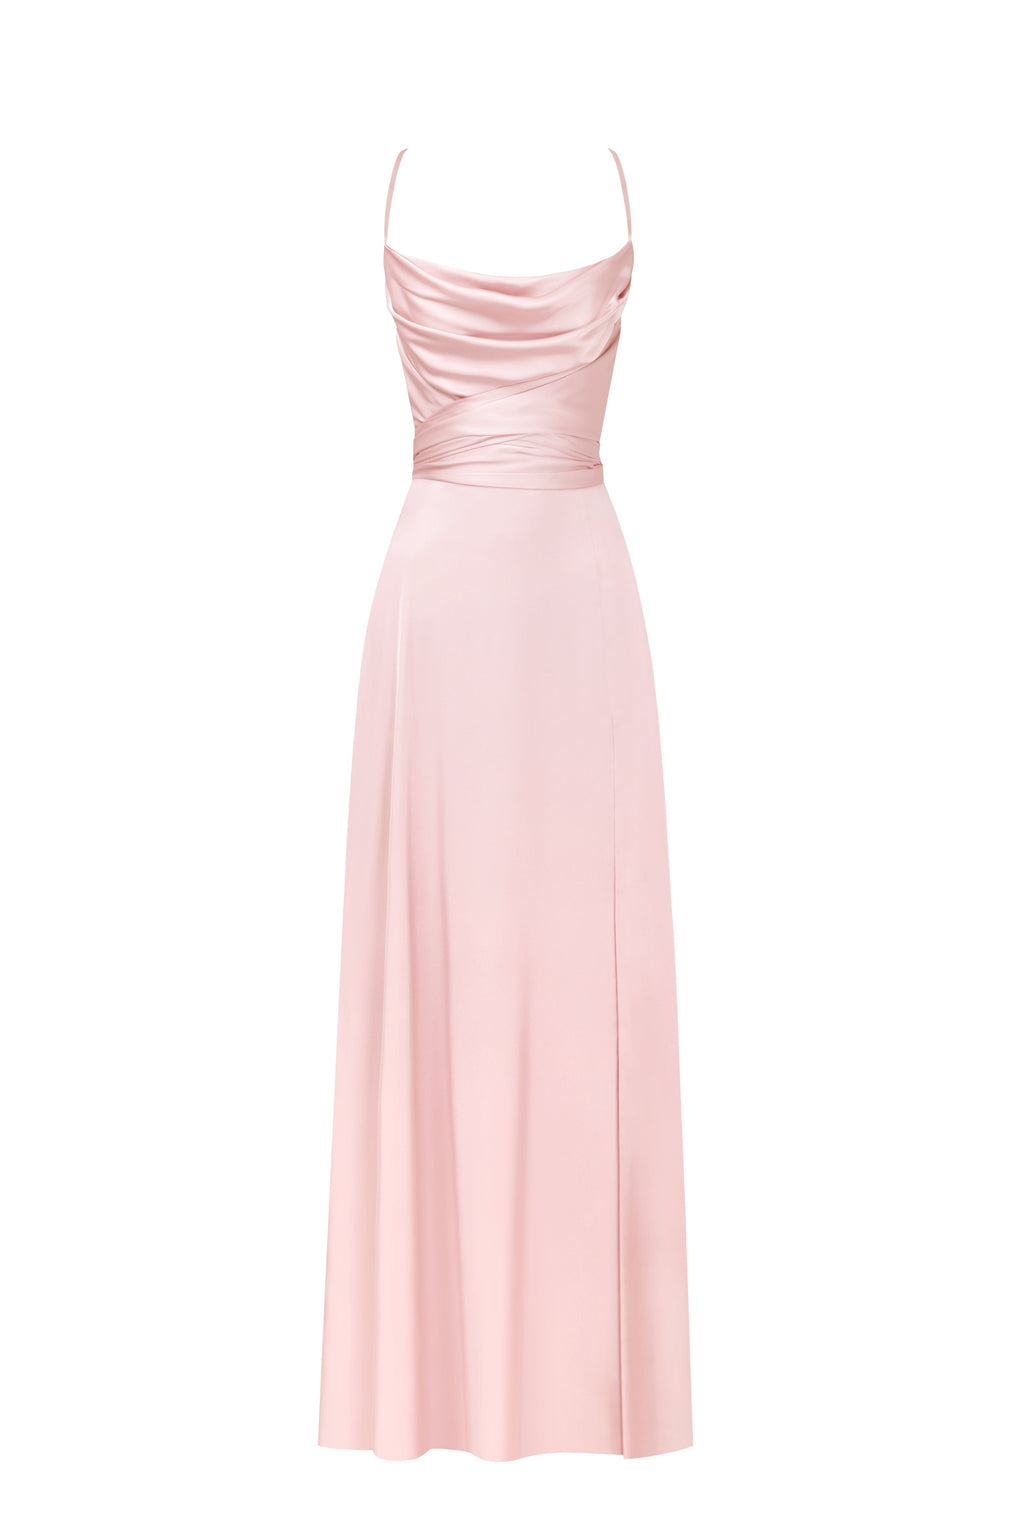 Long Sleeve Pastel Pink Dress, Pink Slip Dress, Silk Midi Dress, Pink Prom  Dress Midi, Soft Pink Romantic Dress, Silk Dress With Leg Slit 